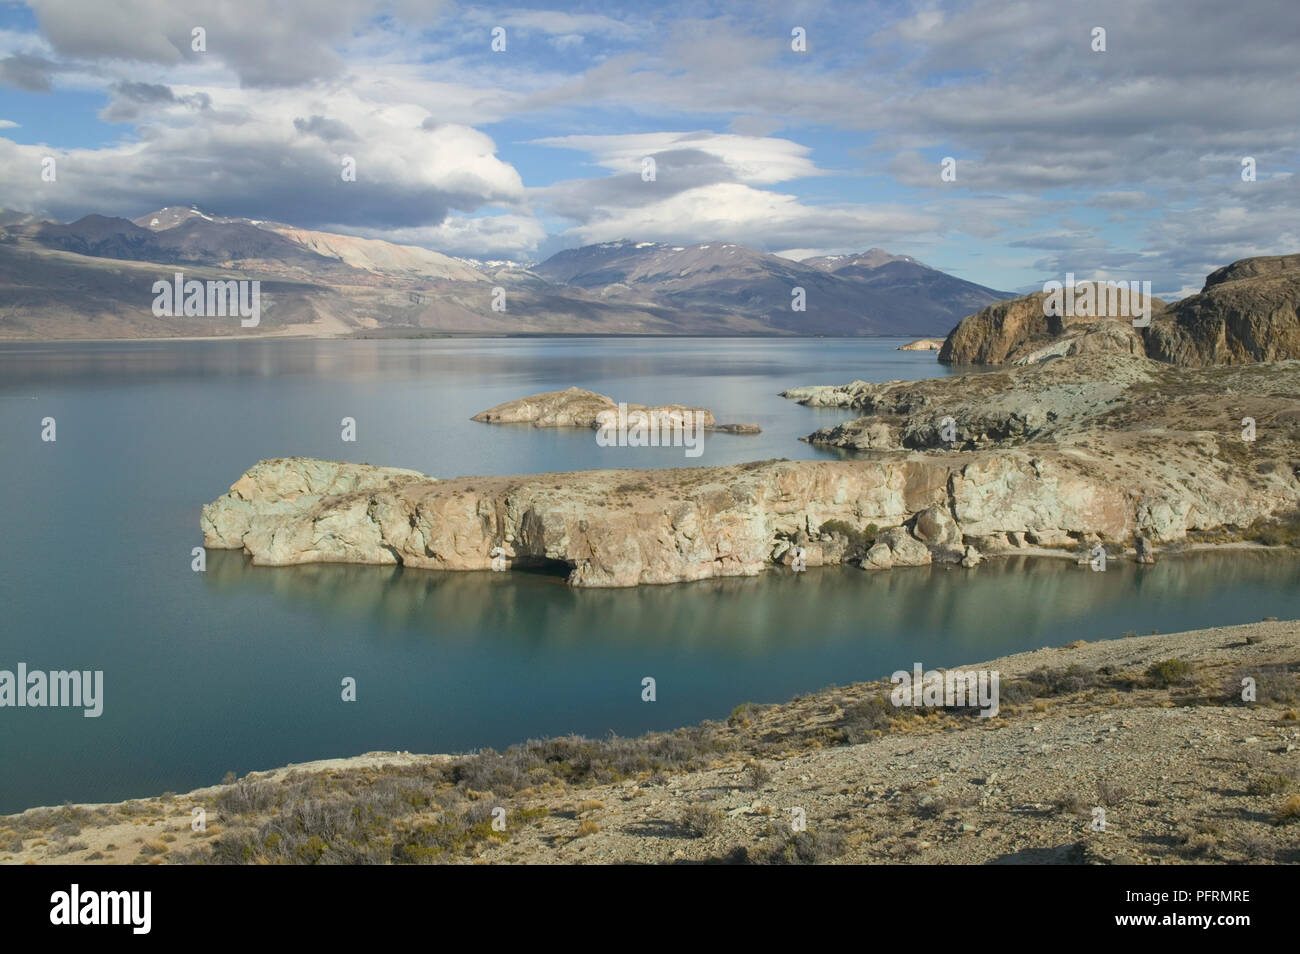 L'Argentine, Patagonie, Santa Cruz Province, Lago Posadas, lac entouré de côte rocheuse Banque D'Images